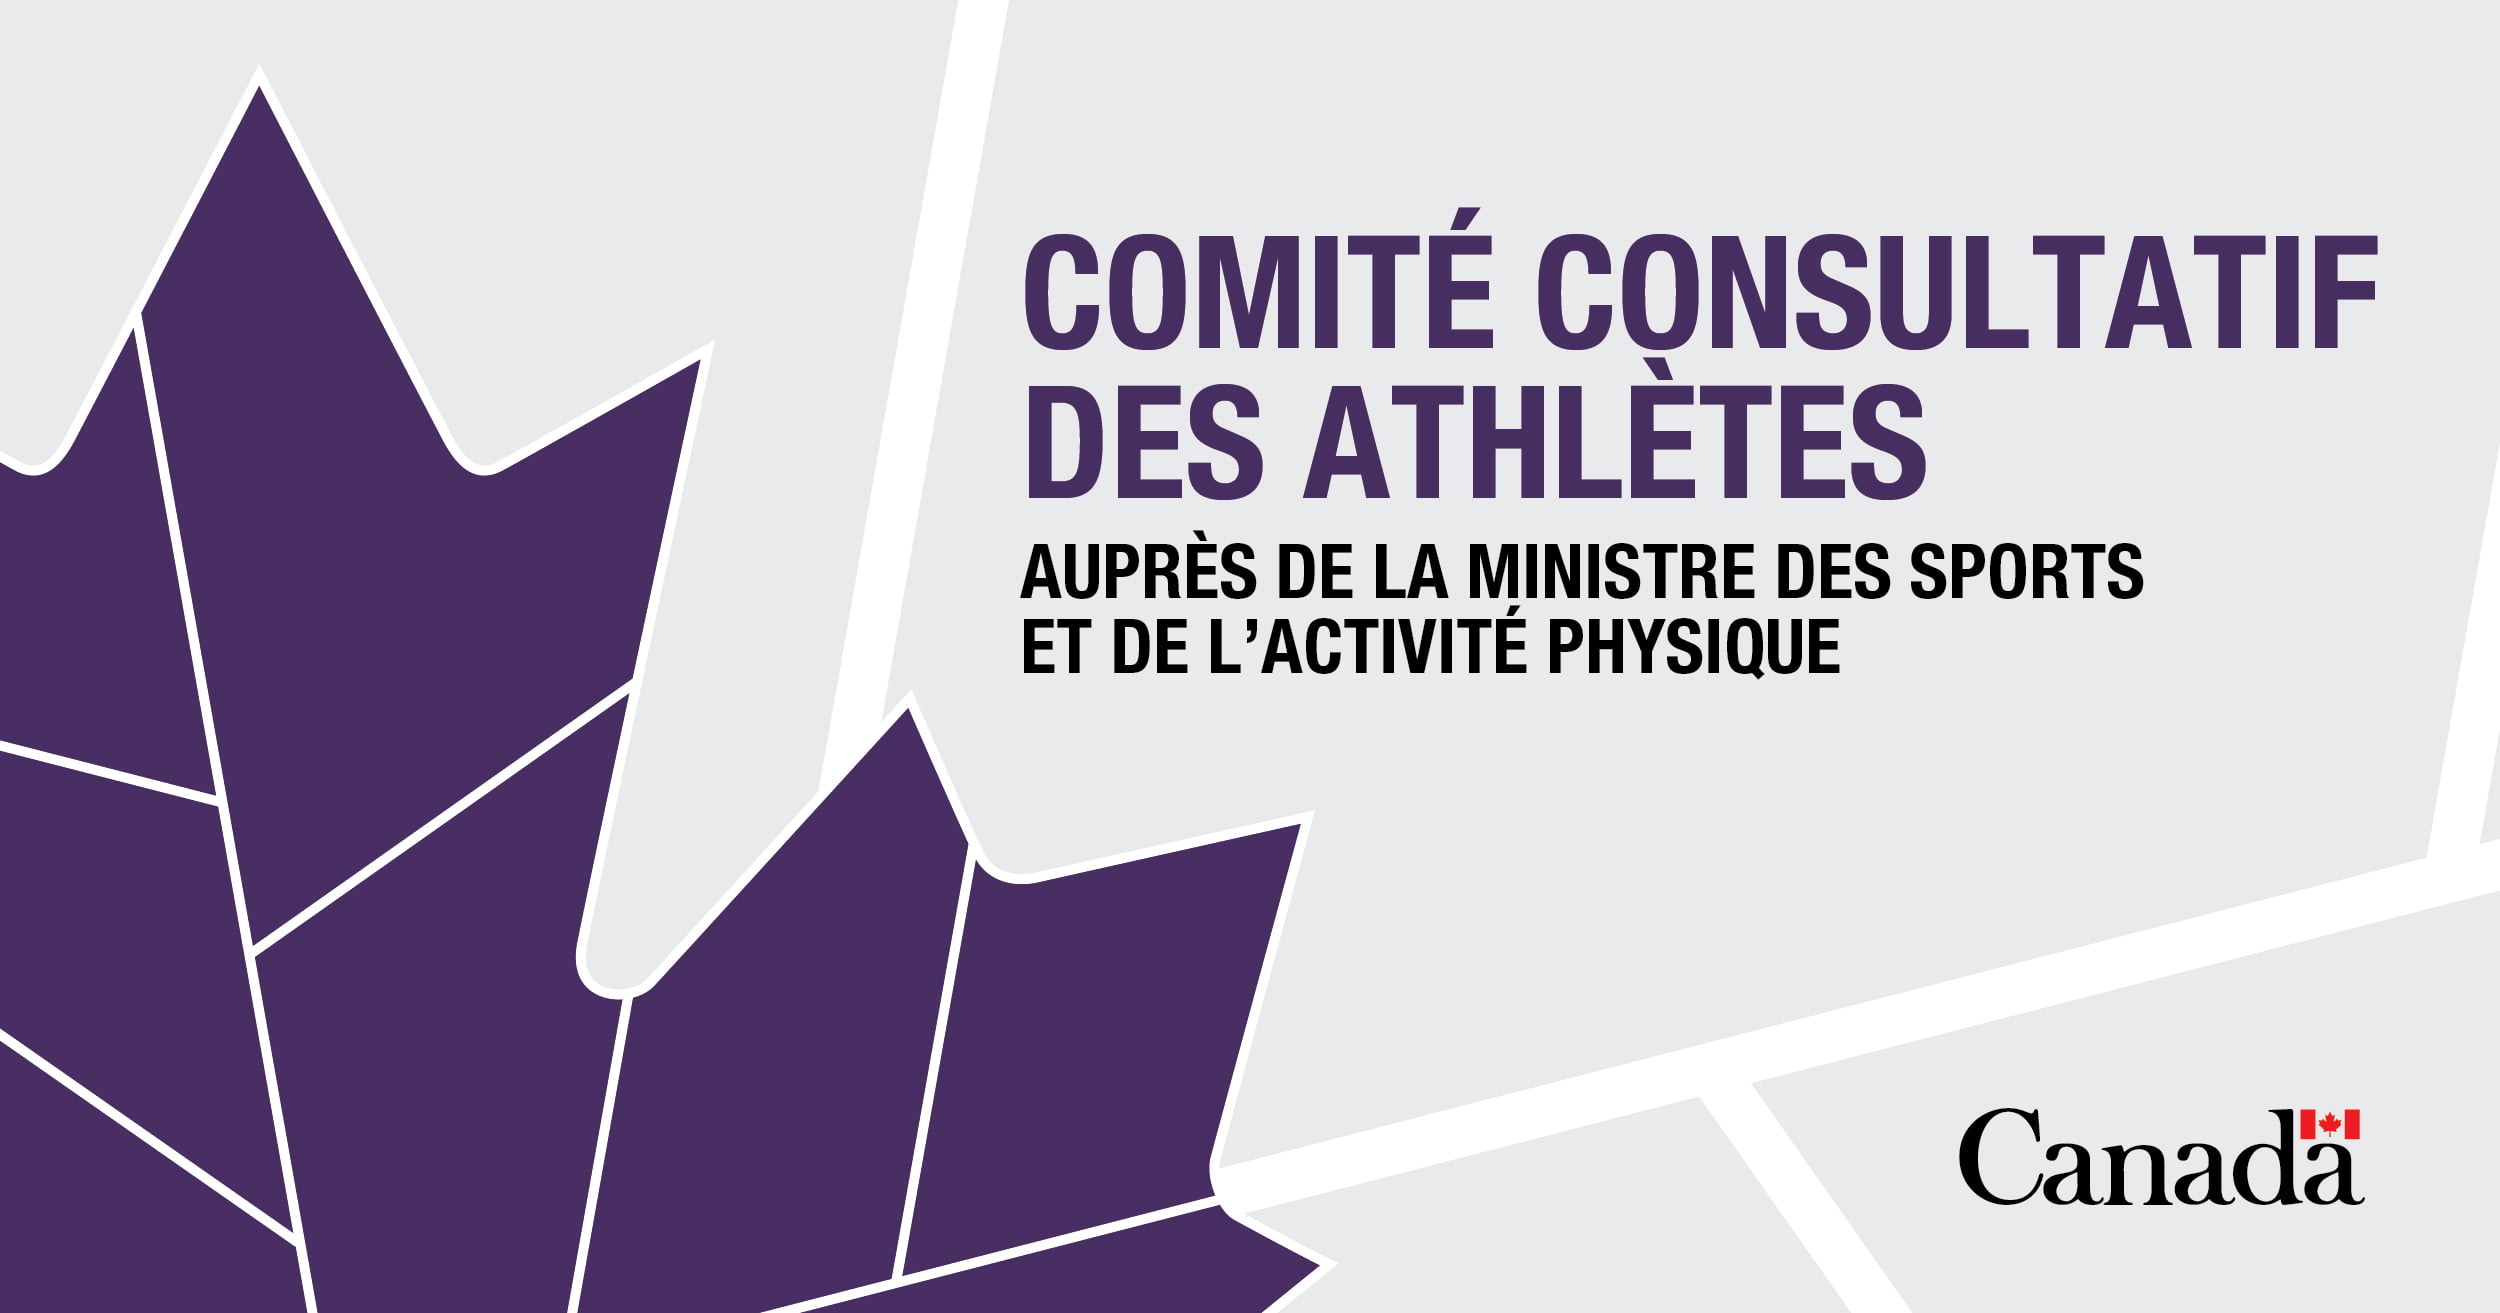 Appel de candidatures : Comité consultatif des athlètes auprès de la ministre des sports et de l’activité physique